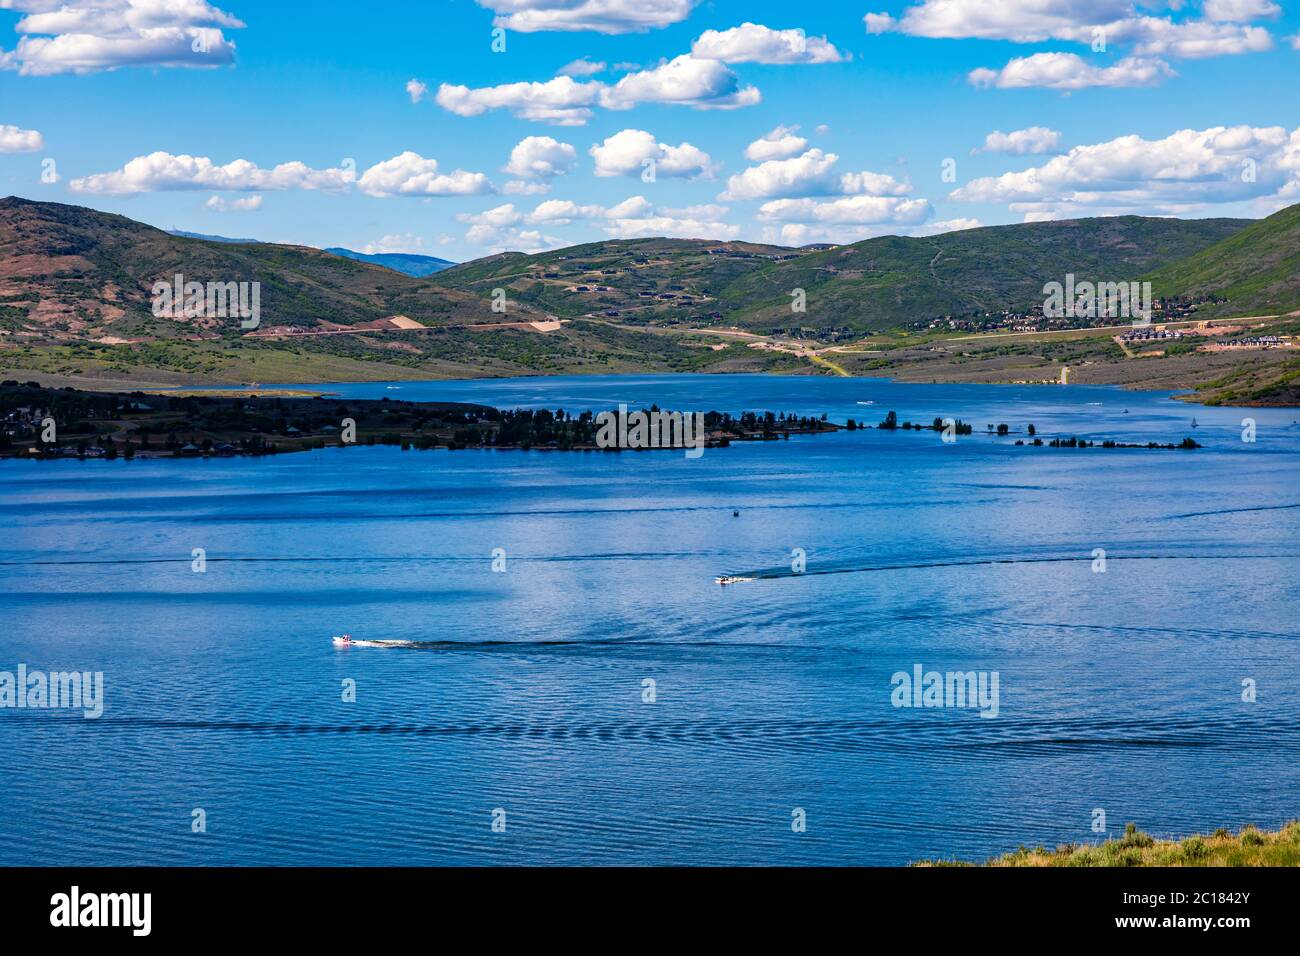 Questa è una panoramica del lago artificiale Jordanelle e del parco statale vicino a Heber City, Wasatch County, Utah, Stati Uniti. Foto Stock